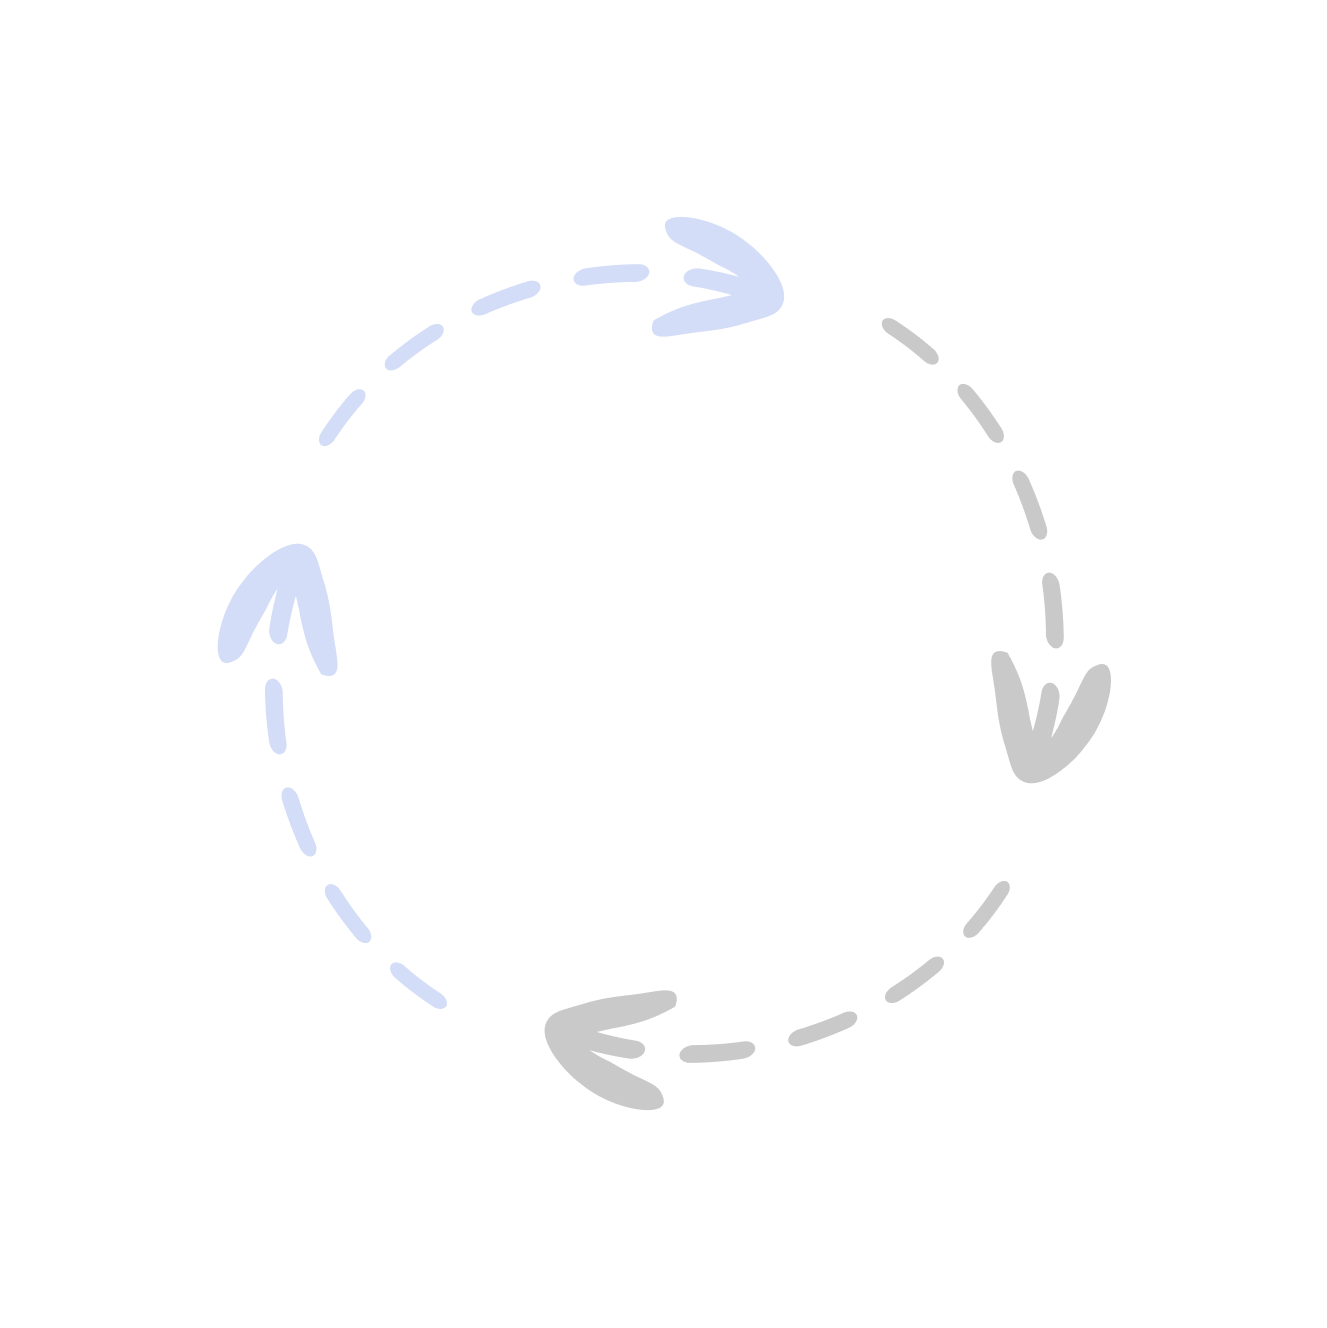 Circle image